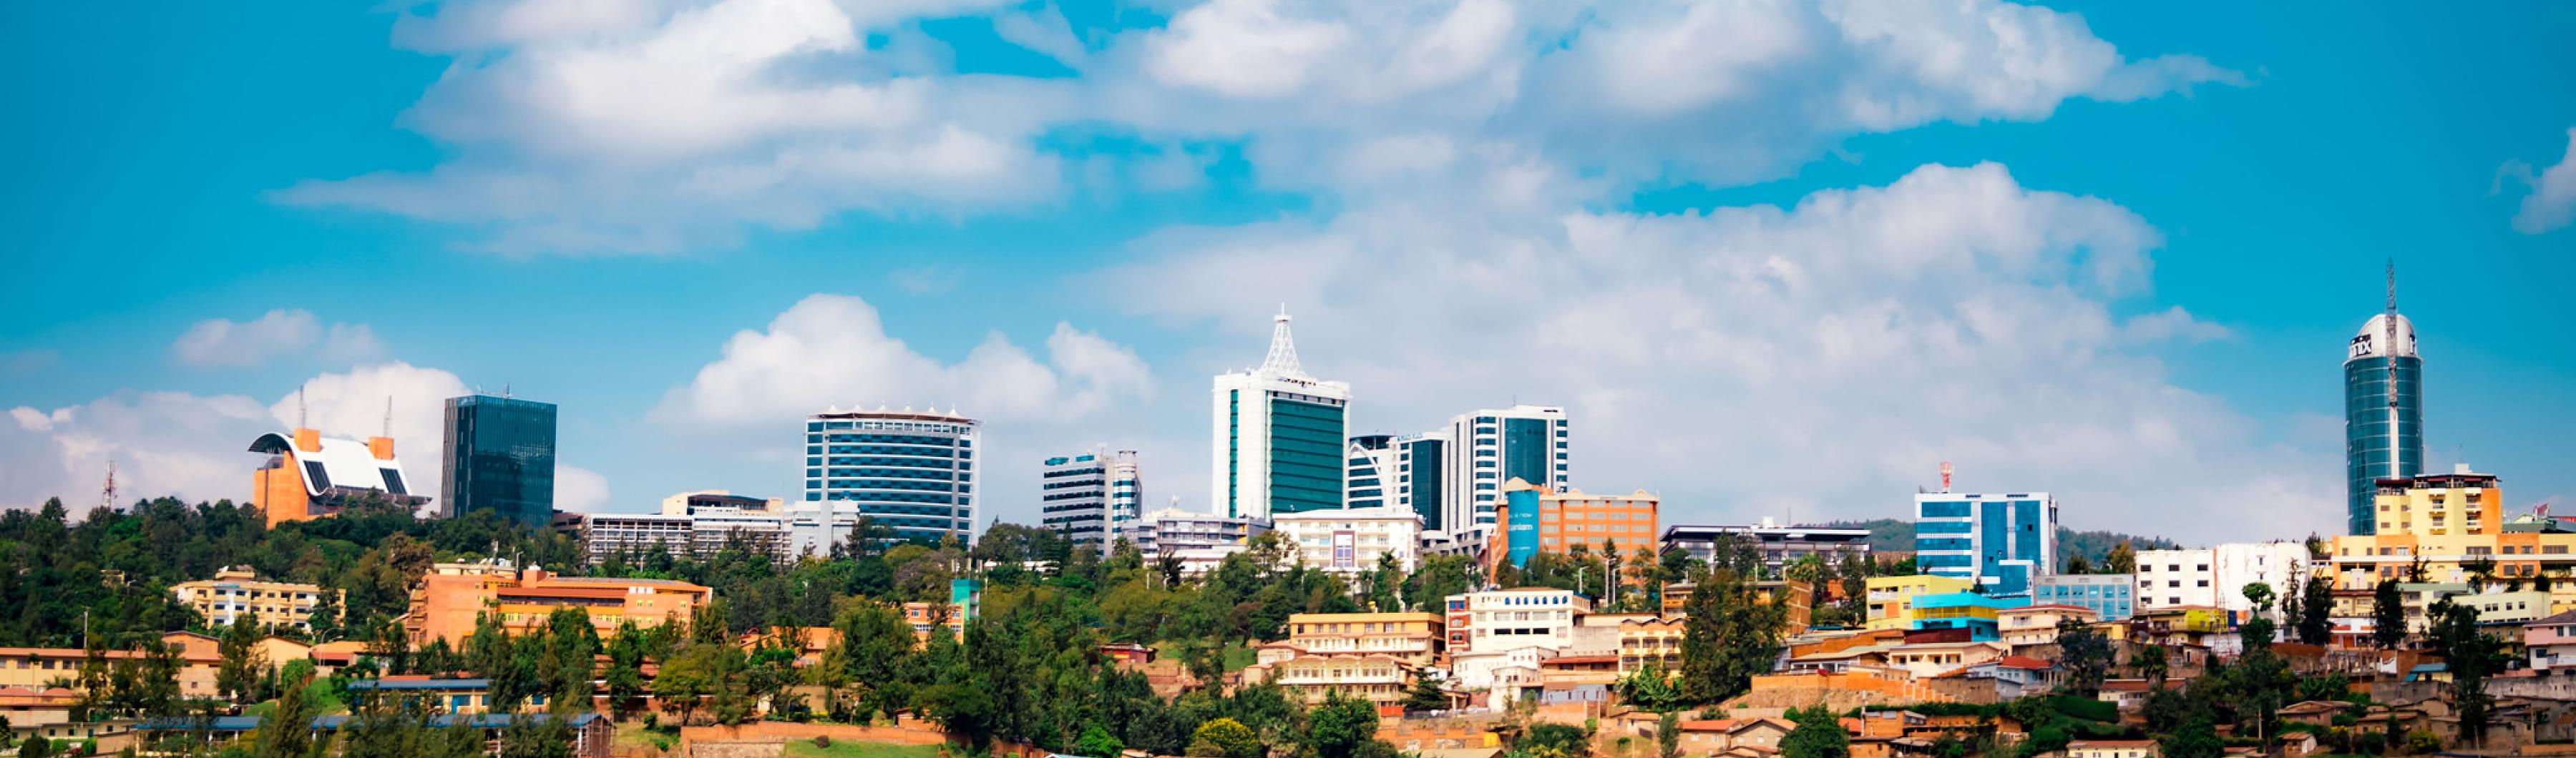 Vista do centro de Kigali